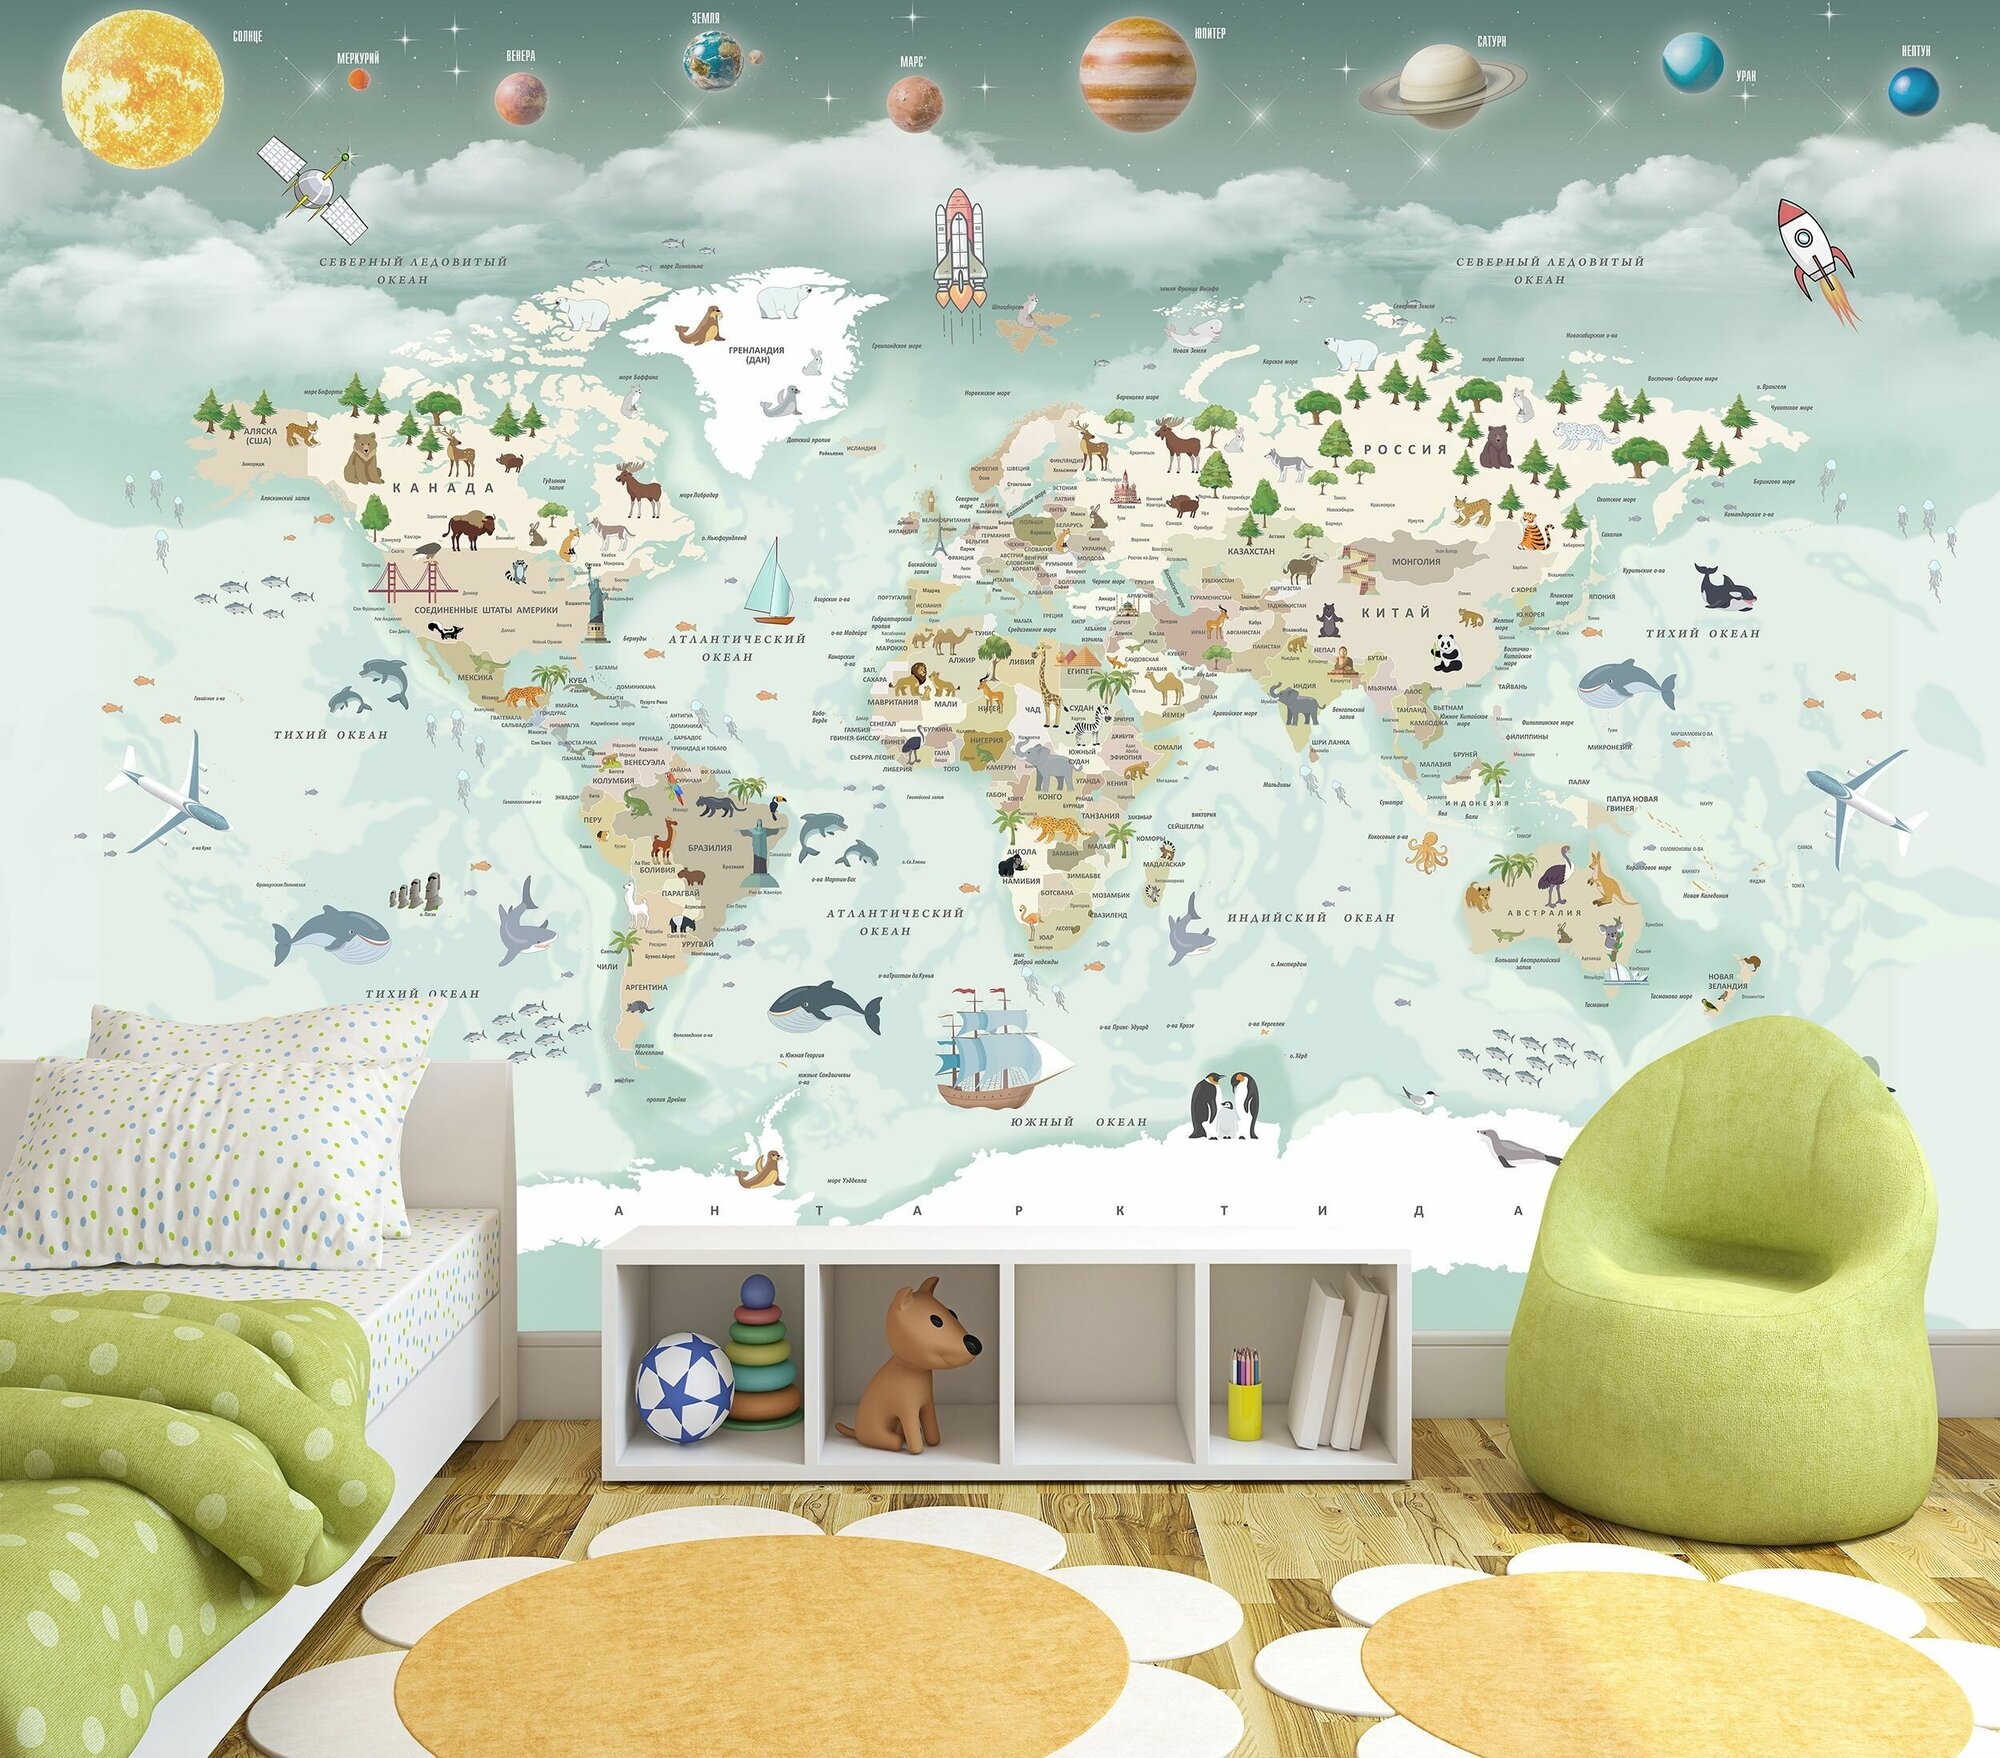 Фотообои флизелиновые 200х130см. на стену. Серия MAPS ARTDELUXE. Детская карта мира и планеты. Обои дизайнерские, эксклюзивные для детской комнаты.